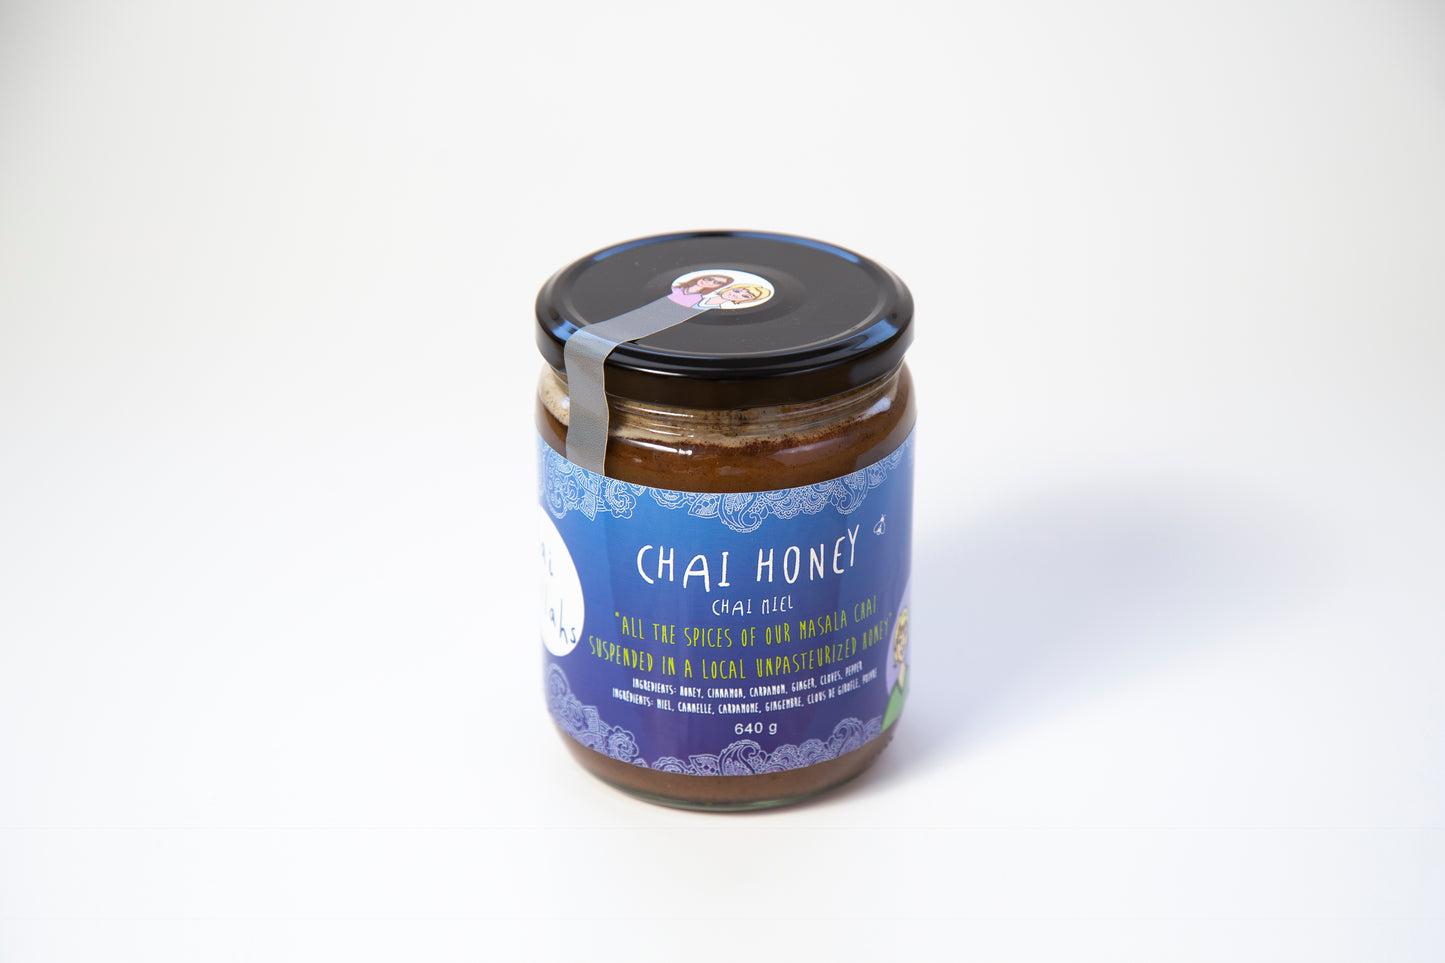 Chai Honey - Indian inspired Alberta made!